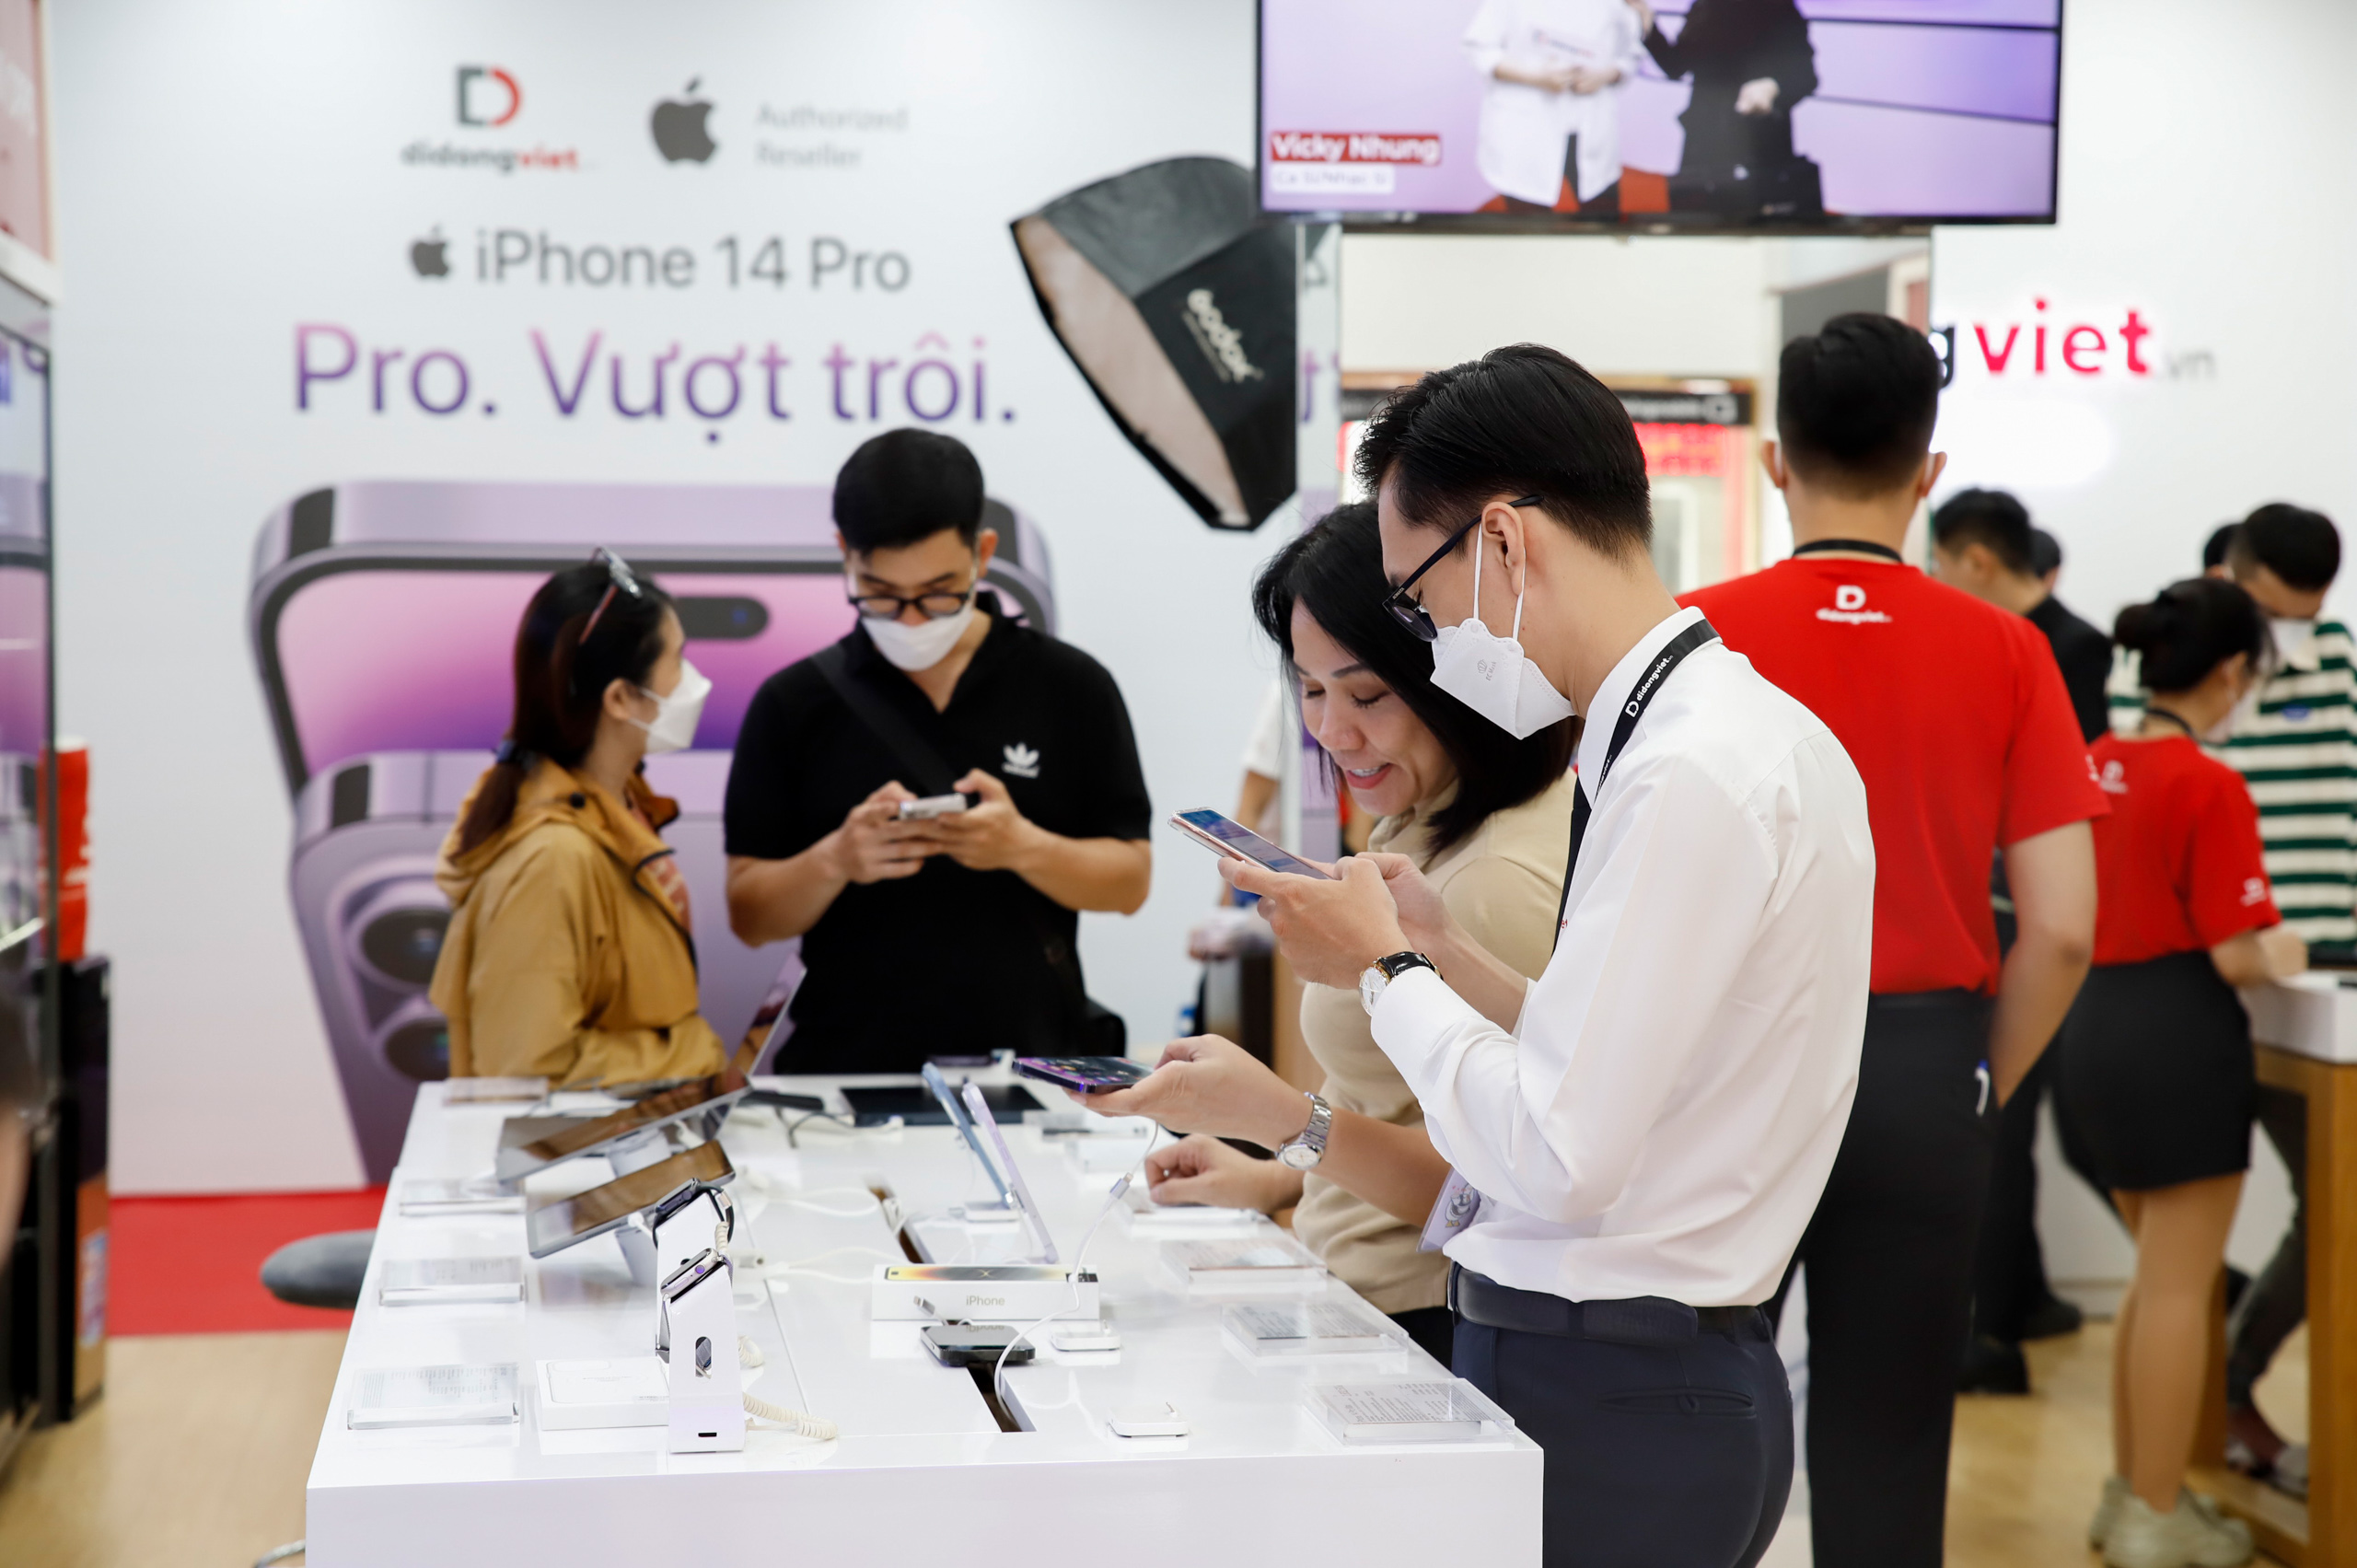 Nhiều người xếp hàng nhận iPhone 14 series VN/A trong ngày mở bán đầu tiên